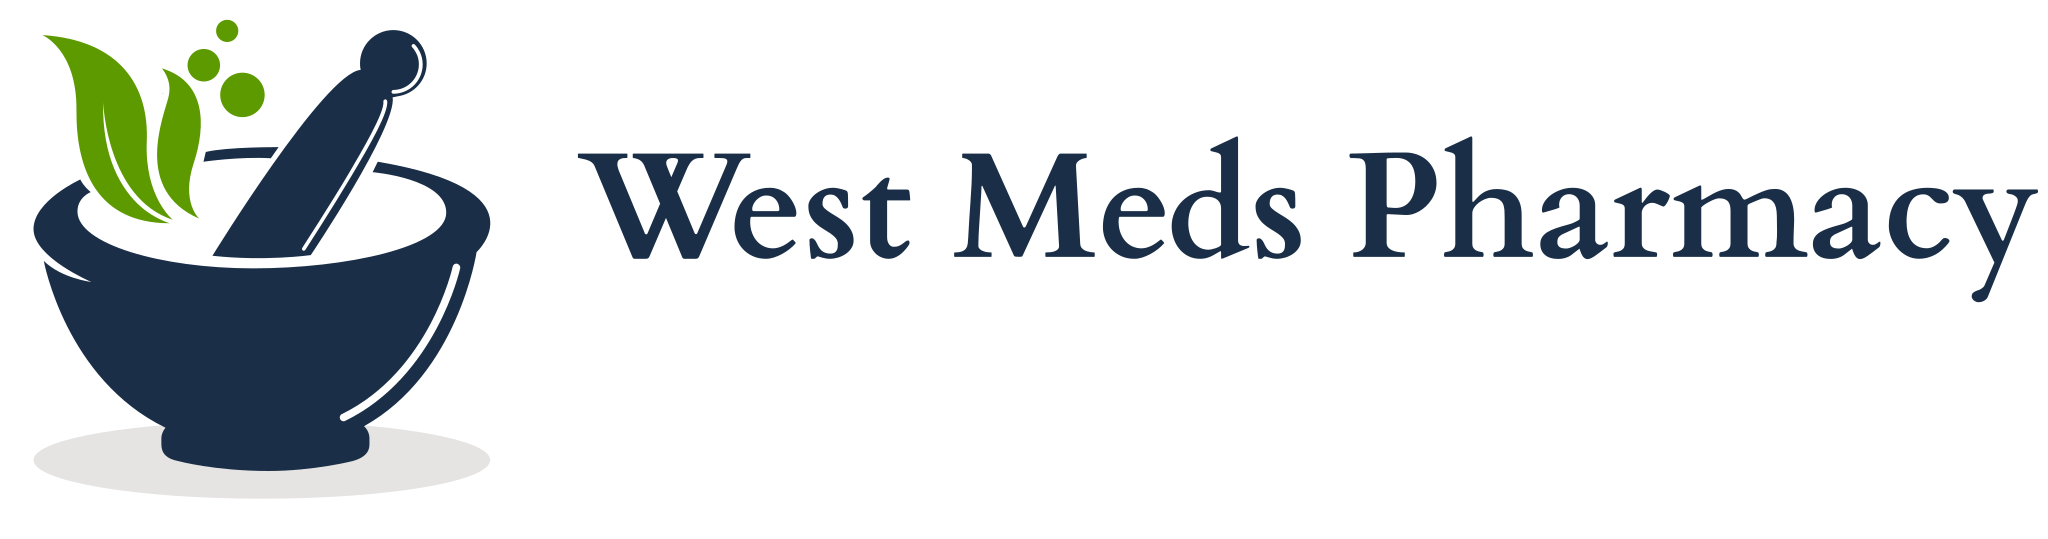 West Meds Pharmacy